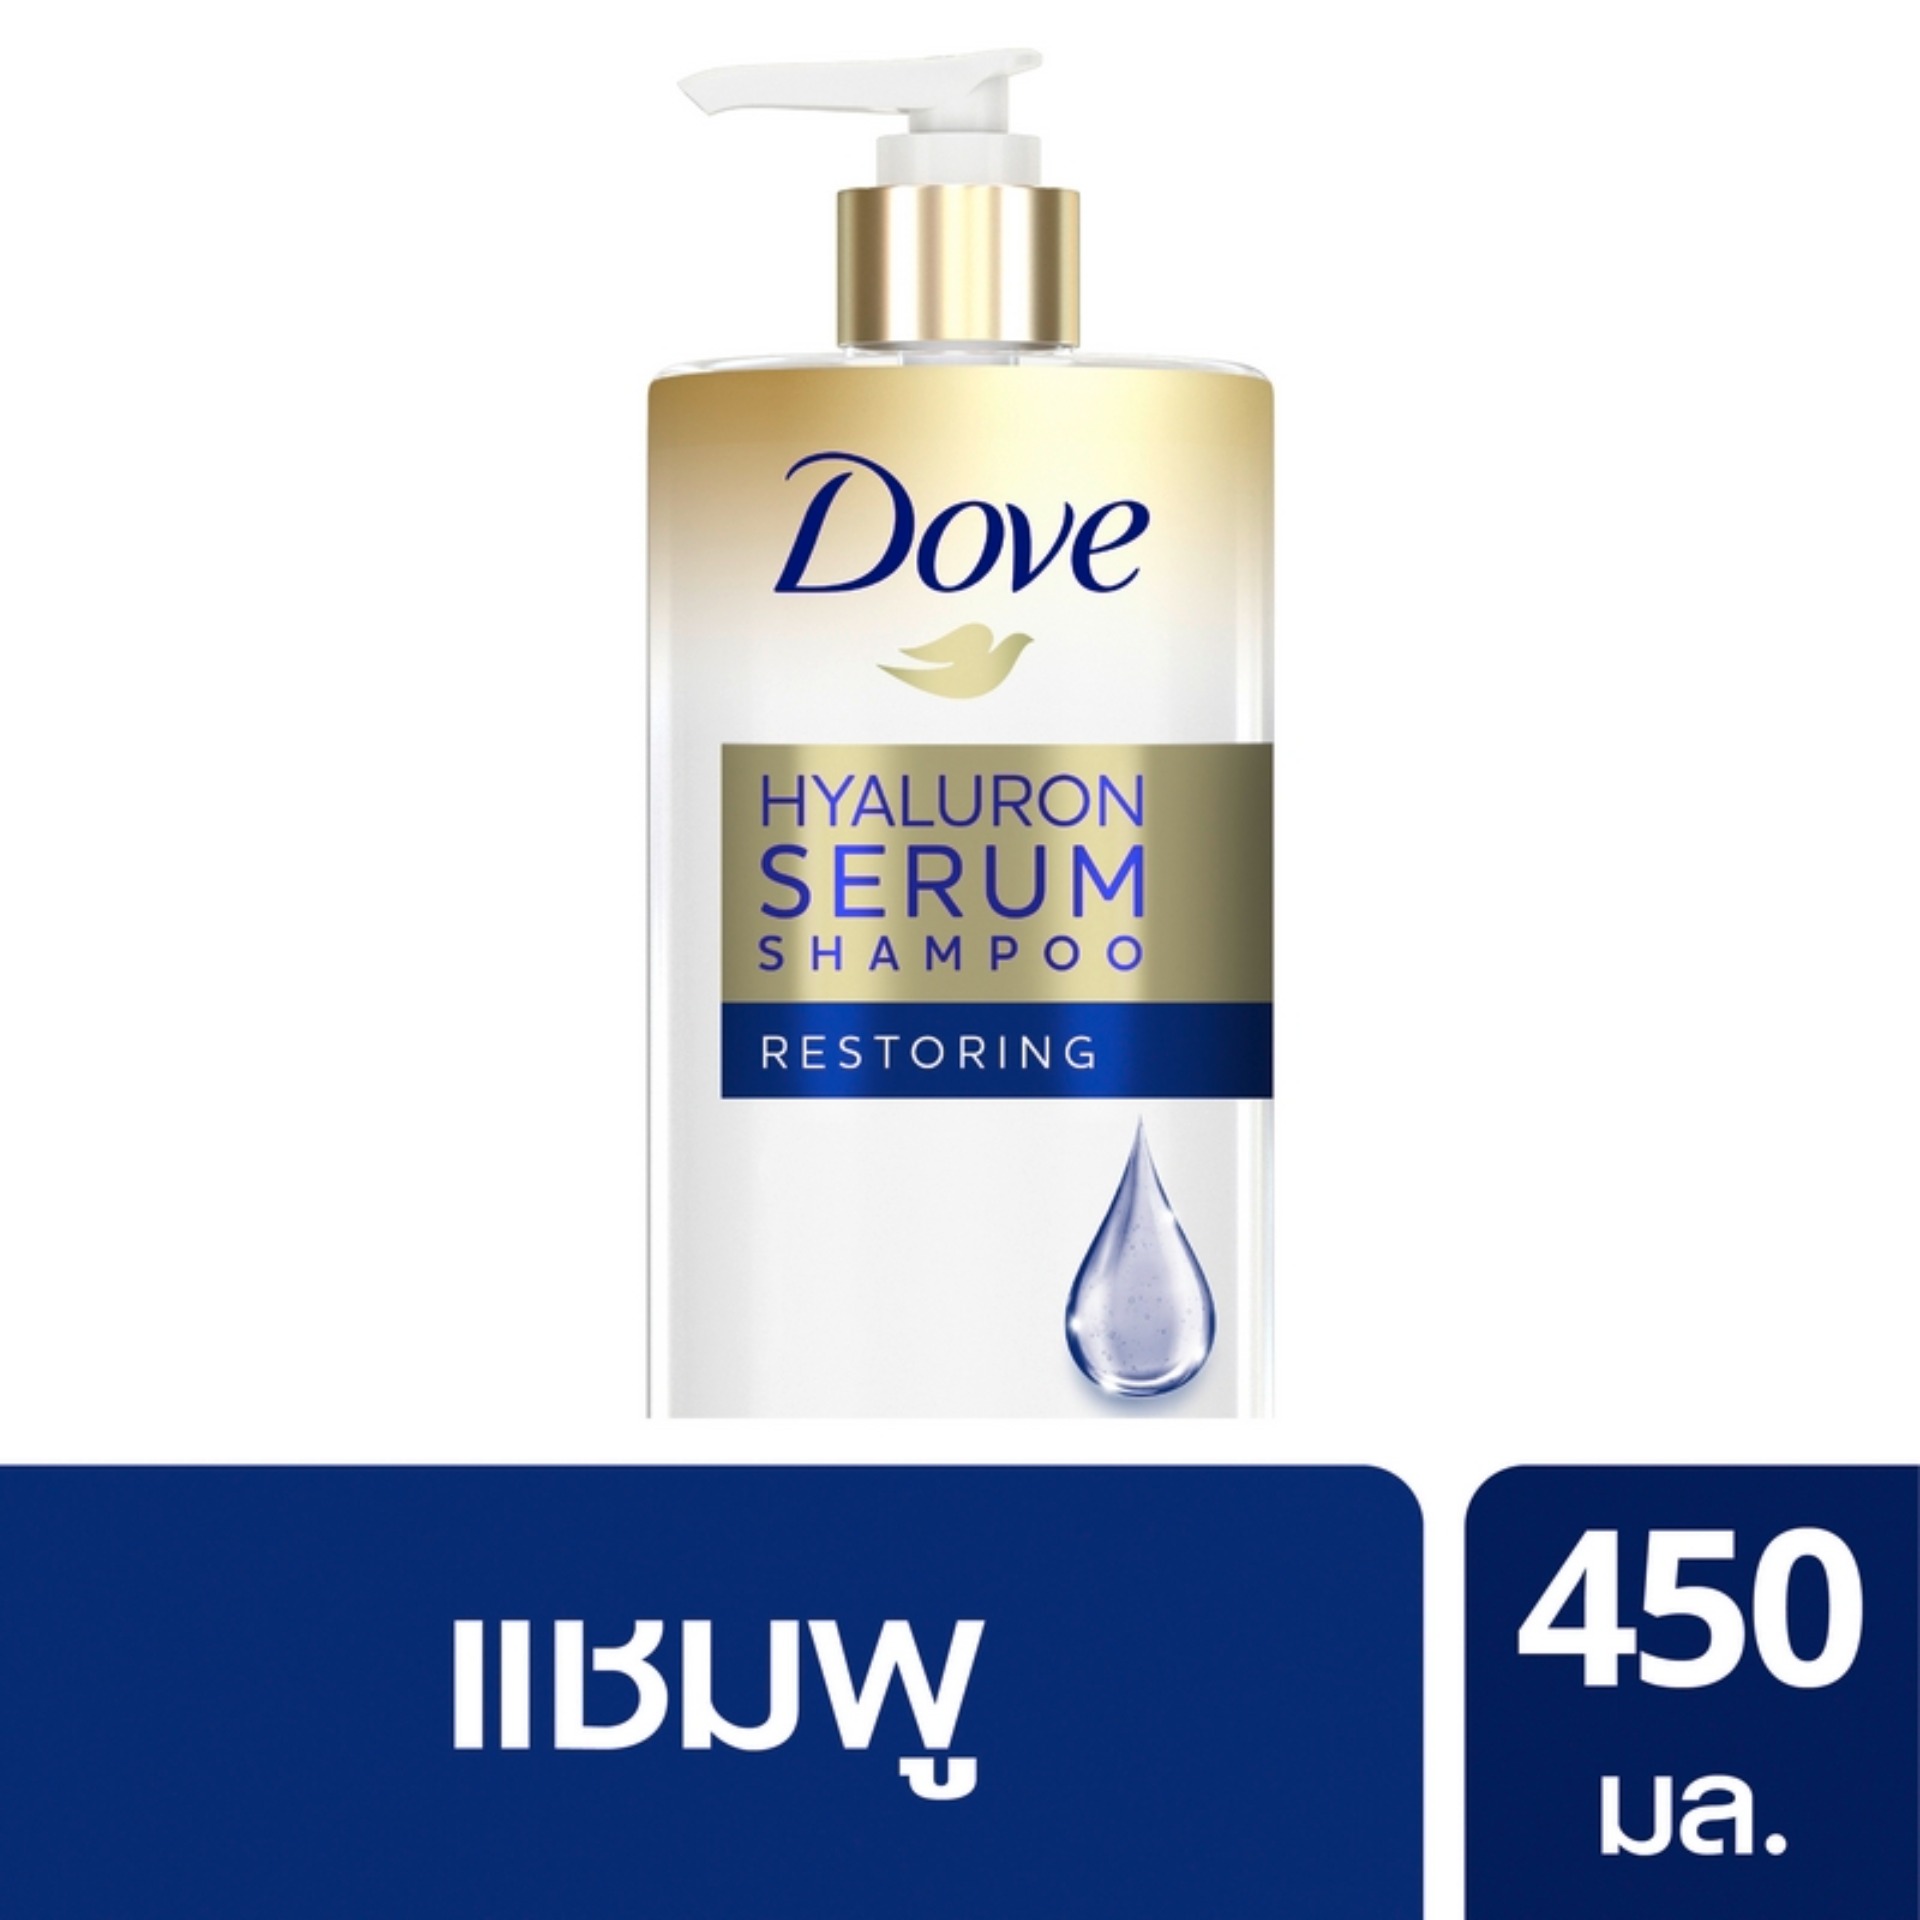 [ส่งฟรี] โดฟ ไฮยาลูรอน เซรั่ม รีสโตร์ริ่ง แชมพู สีน้ำเงิน ฟื้นบำรุงผมและล็อคความชุ่มชื้น 450 มล. Dove Hyaluron Serum Shampoo Restoring 450 ml.( ยาสระผม ครีมสระผม แชมพู shampoo ) ของแท้